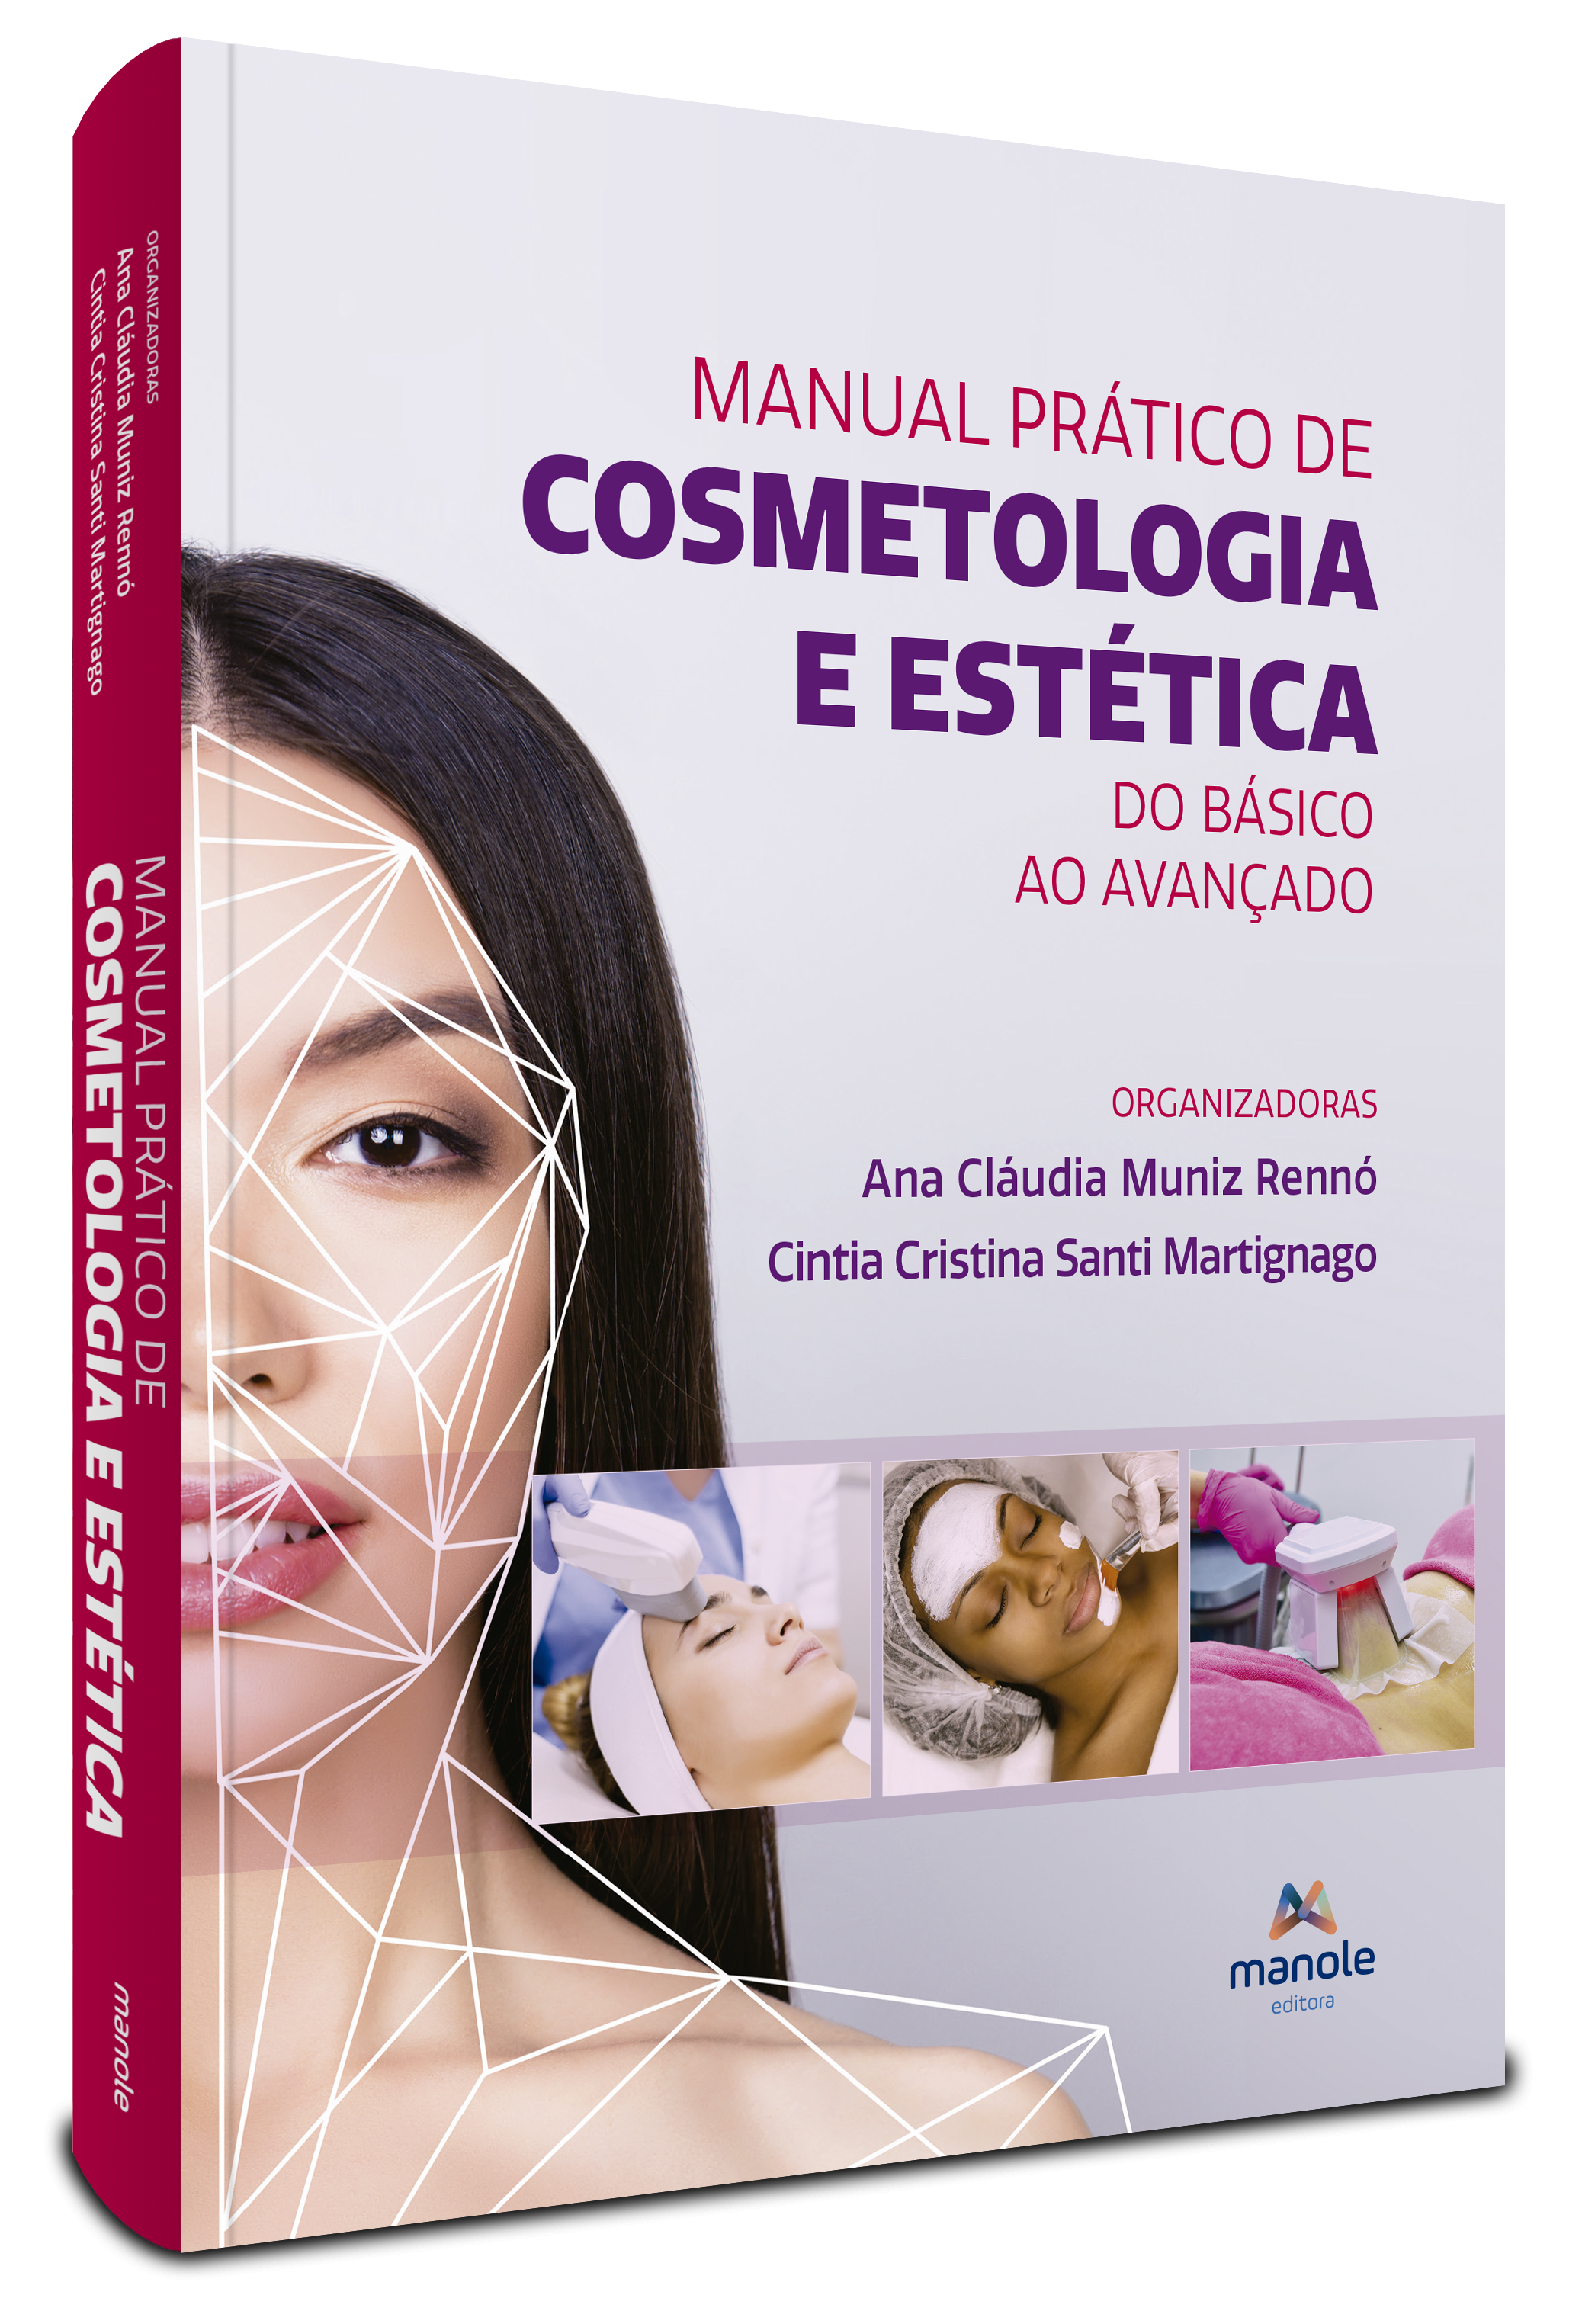 Manual Prático de Cosmetologia e Estética - 1ª Edição Do básico ao